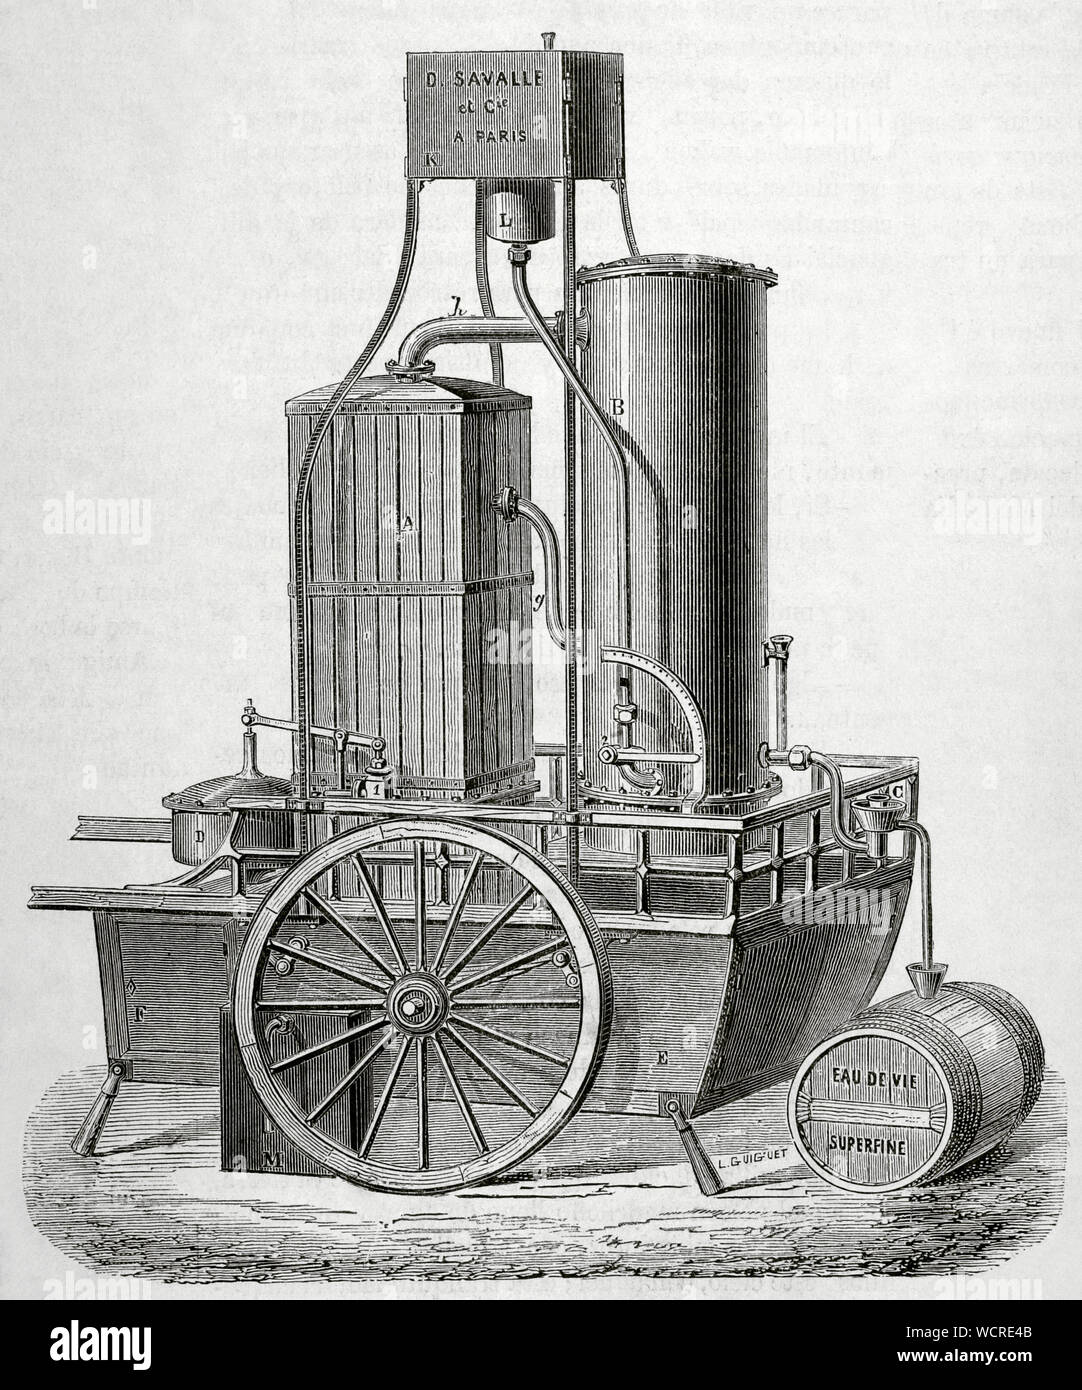 Lokomobile. Traction Engine für die Destillation von Weinen, gebaut von M. Savalle. Es funktionierte durch Dampf. Dieses Modell könnte produzieren 160 Hektoliter Wein. Es bestand aus einem rechteckigen Spalte für ein neues System, eine Wein - Heizung Kondensator und einen Regler. Es hatte auch einen Wein Tank mit einem anderen Power Regulator ausgestattet. Zeichnung von L. Guiguet. Gravur. La Ilustracion Española y Americana, 15. Oktober 1876. Stockfoto